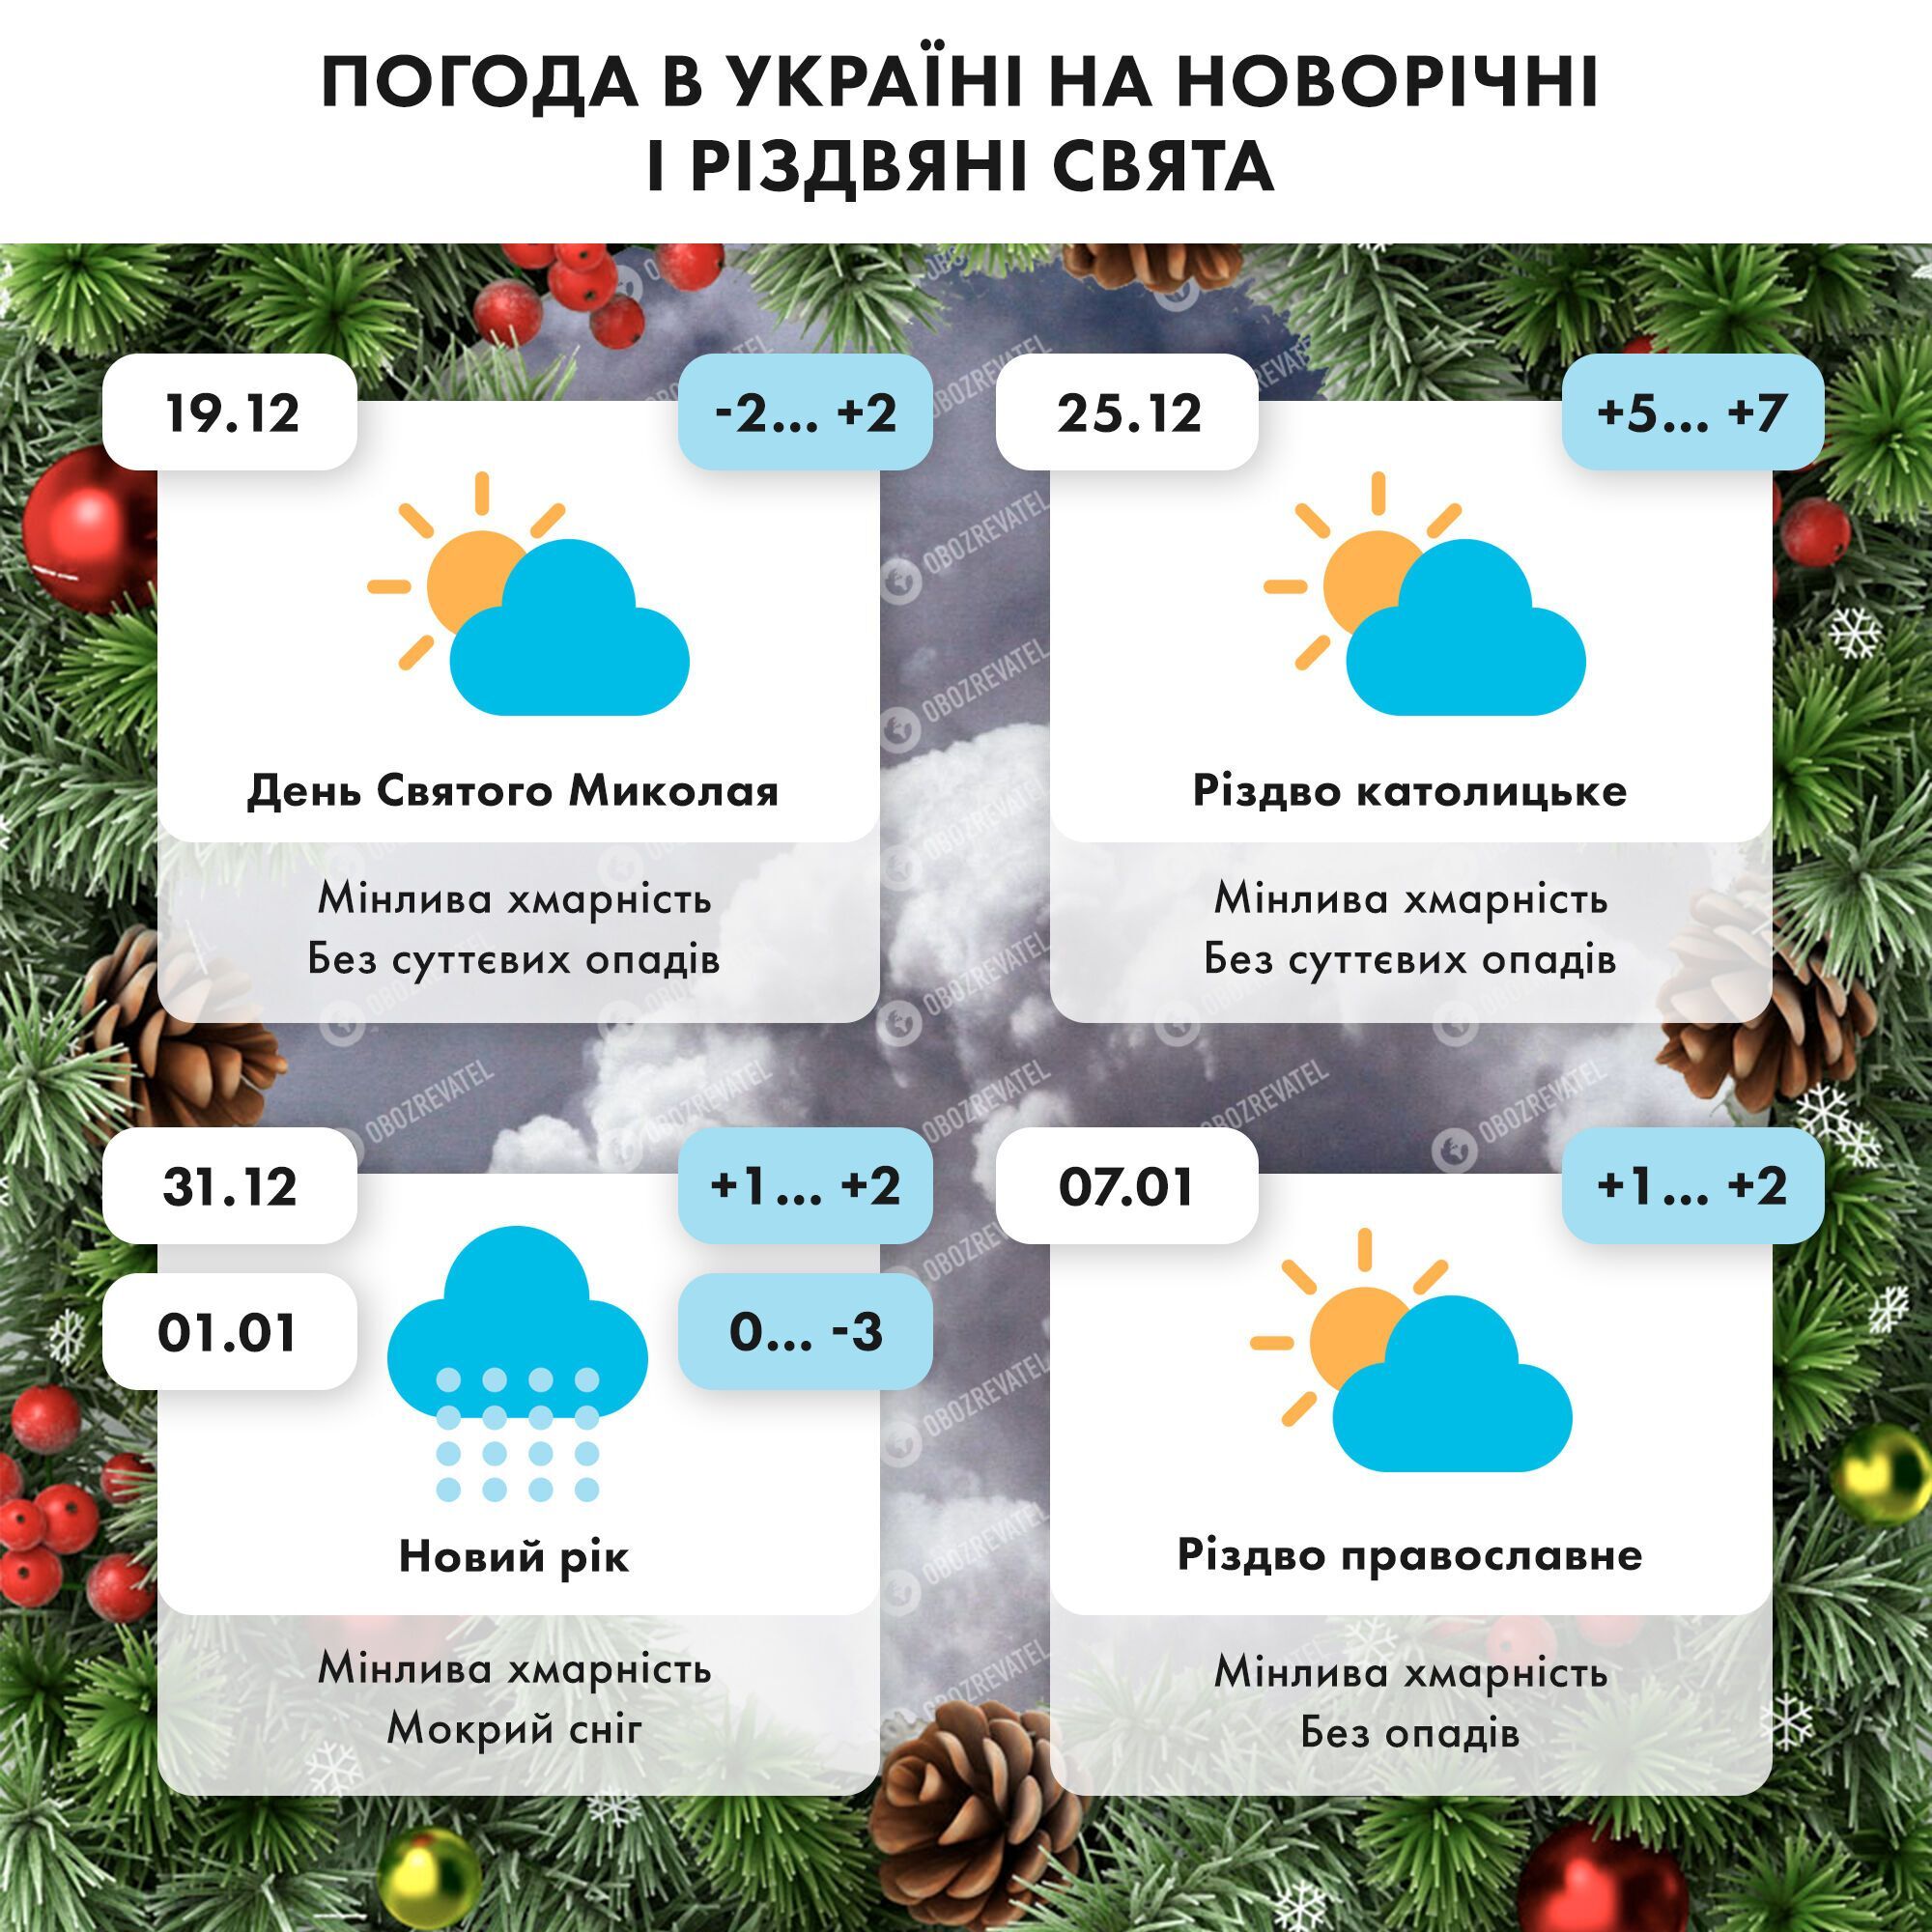 Погода на новорічні і різдвяні свята в Україні.